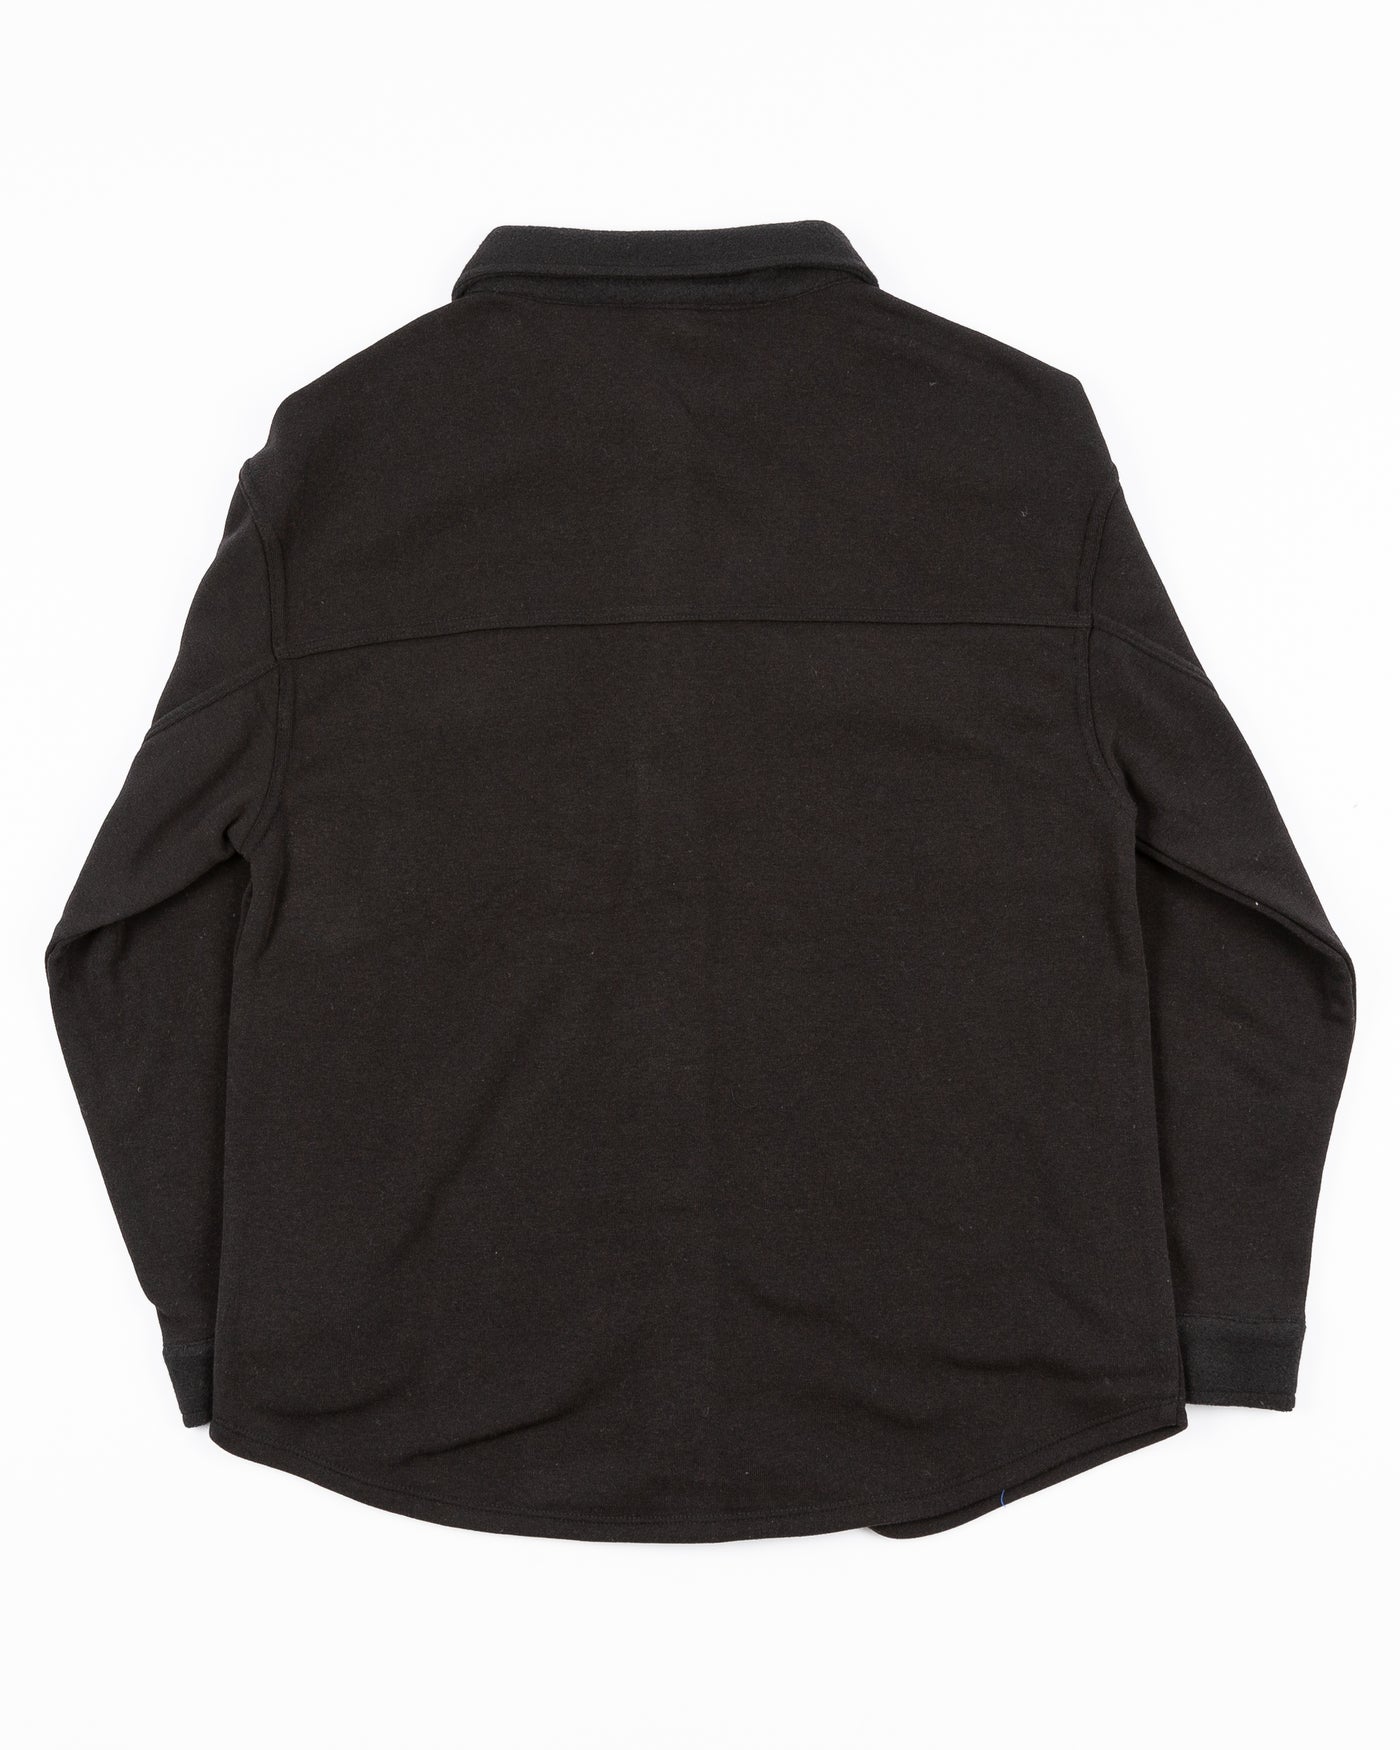 black women's Zoozatz shacket with Chicago Blackhawks primary logo on left chest pocket - back lay flat